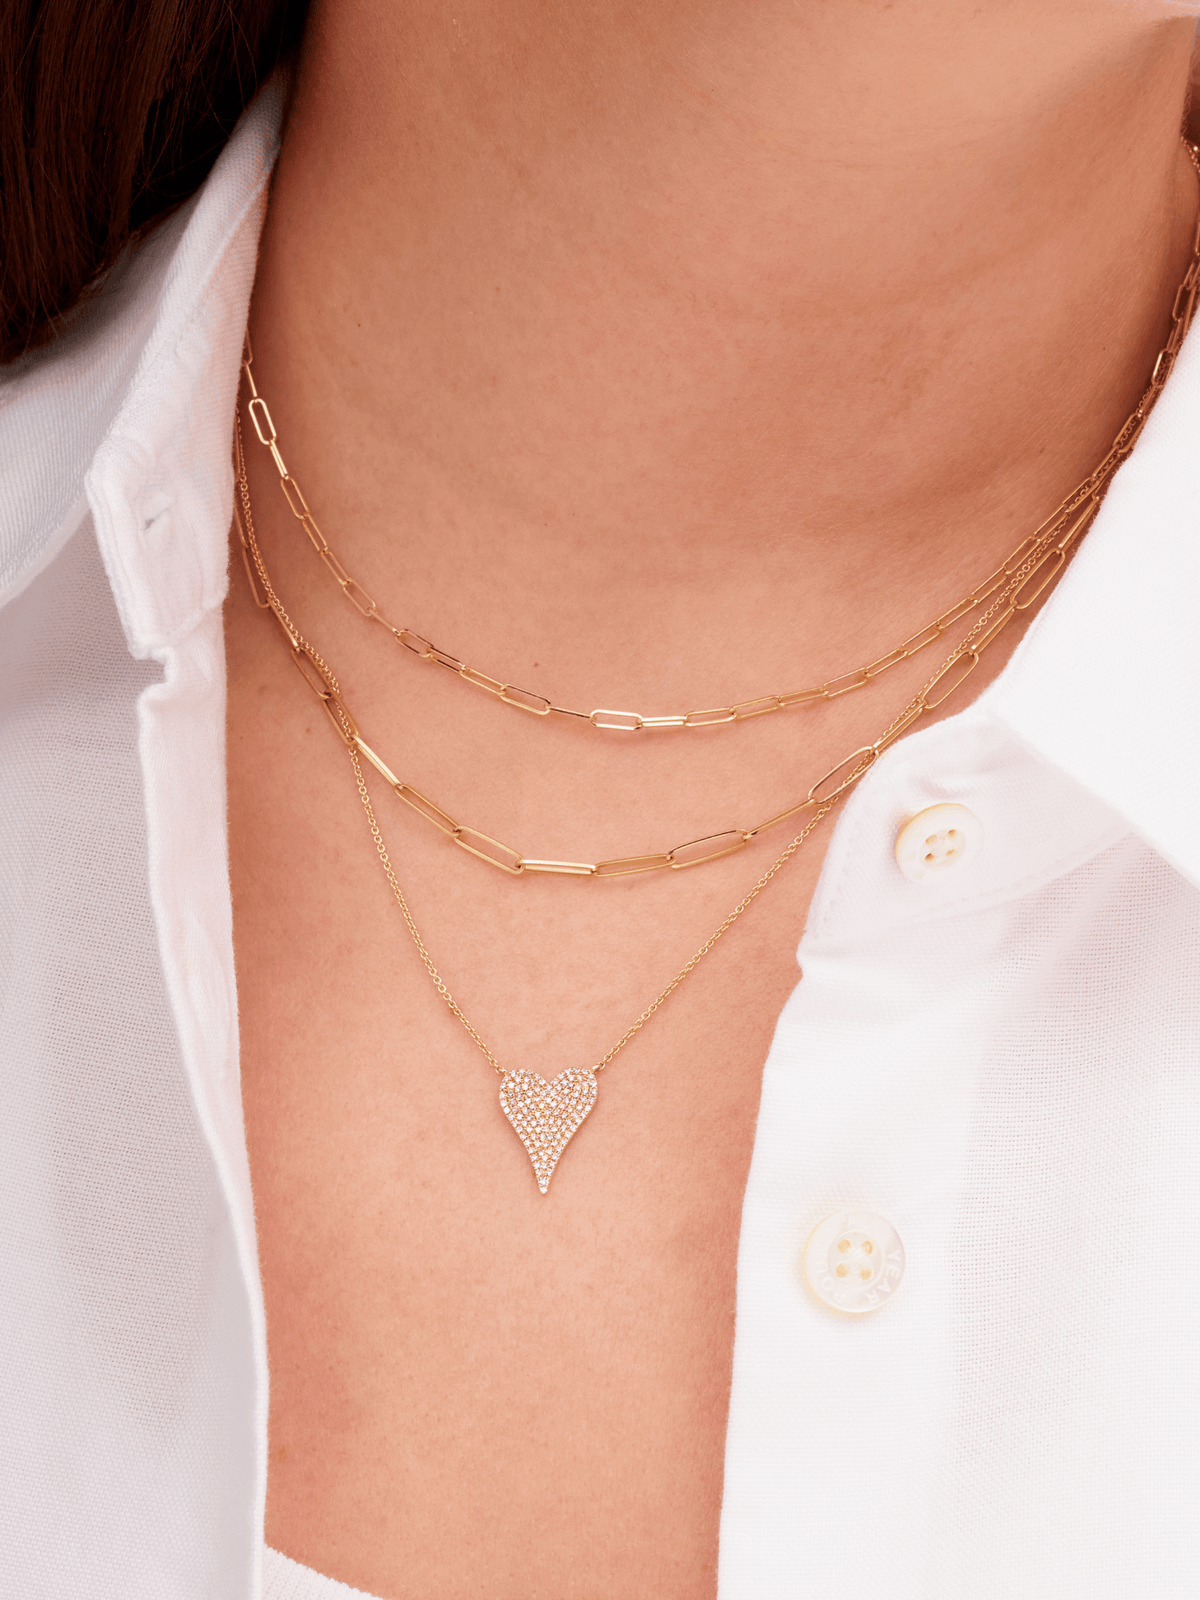 Pave Heart Diamond Necklace 14K - LeMel